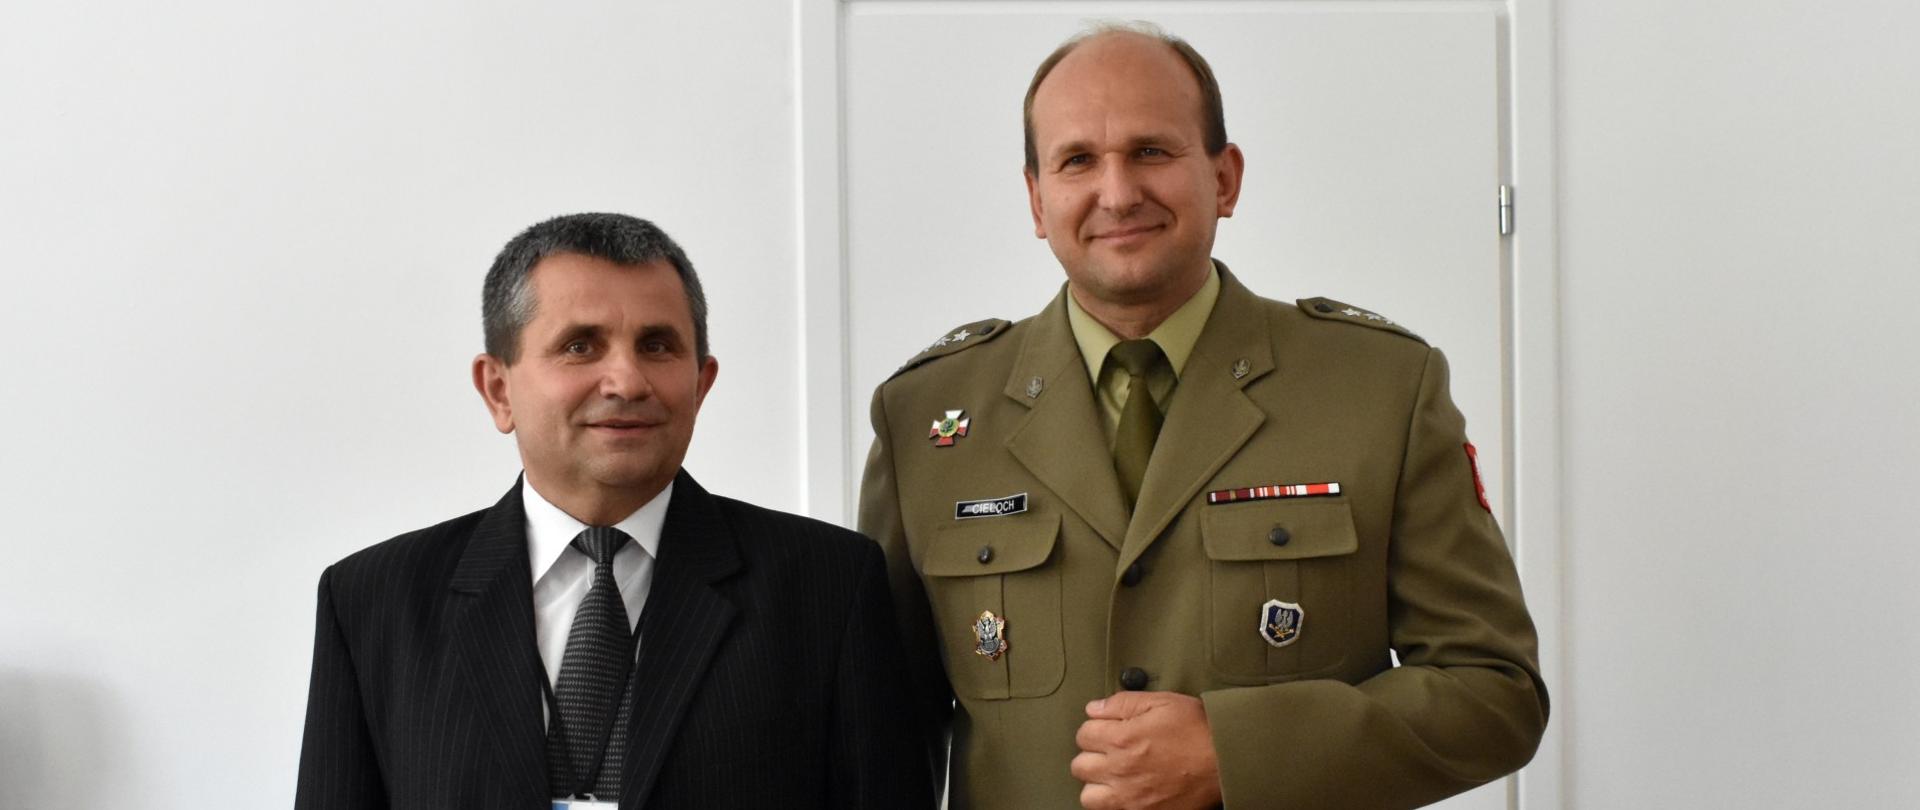 Dyrektor WIChiR dr inż. Bogusław Kot, wraz z zastępcą - pułkownikiem Grzegorzem Cielochem stoją uśmiechnięci ramię w ramię po oficjalnym przekazaniu obowiązków.